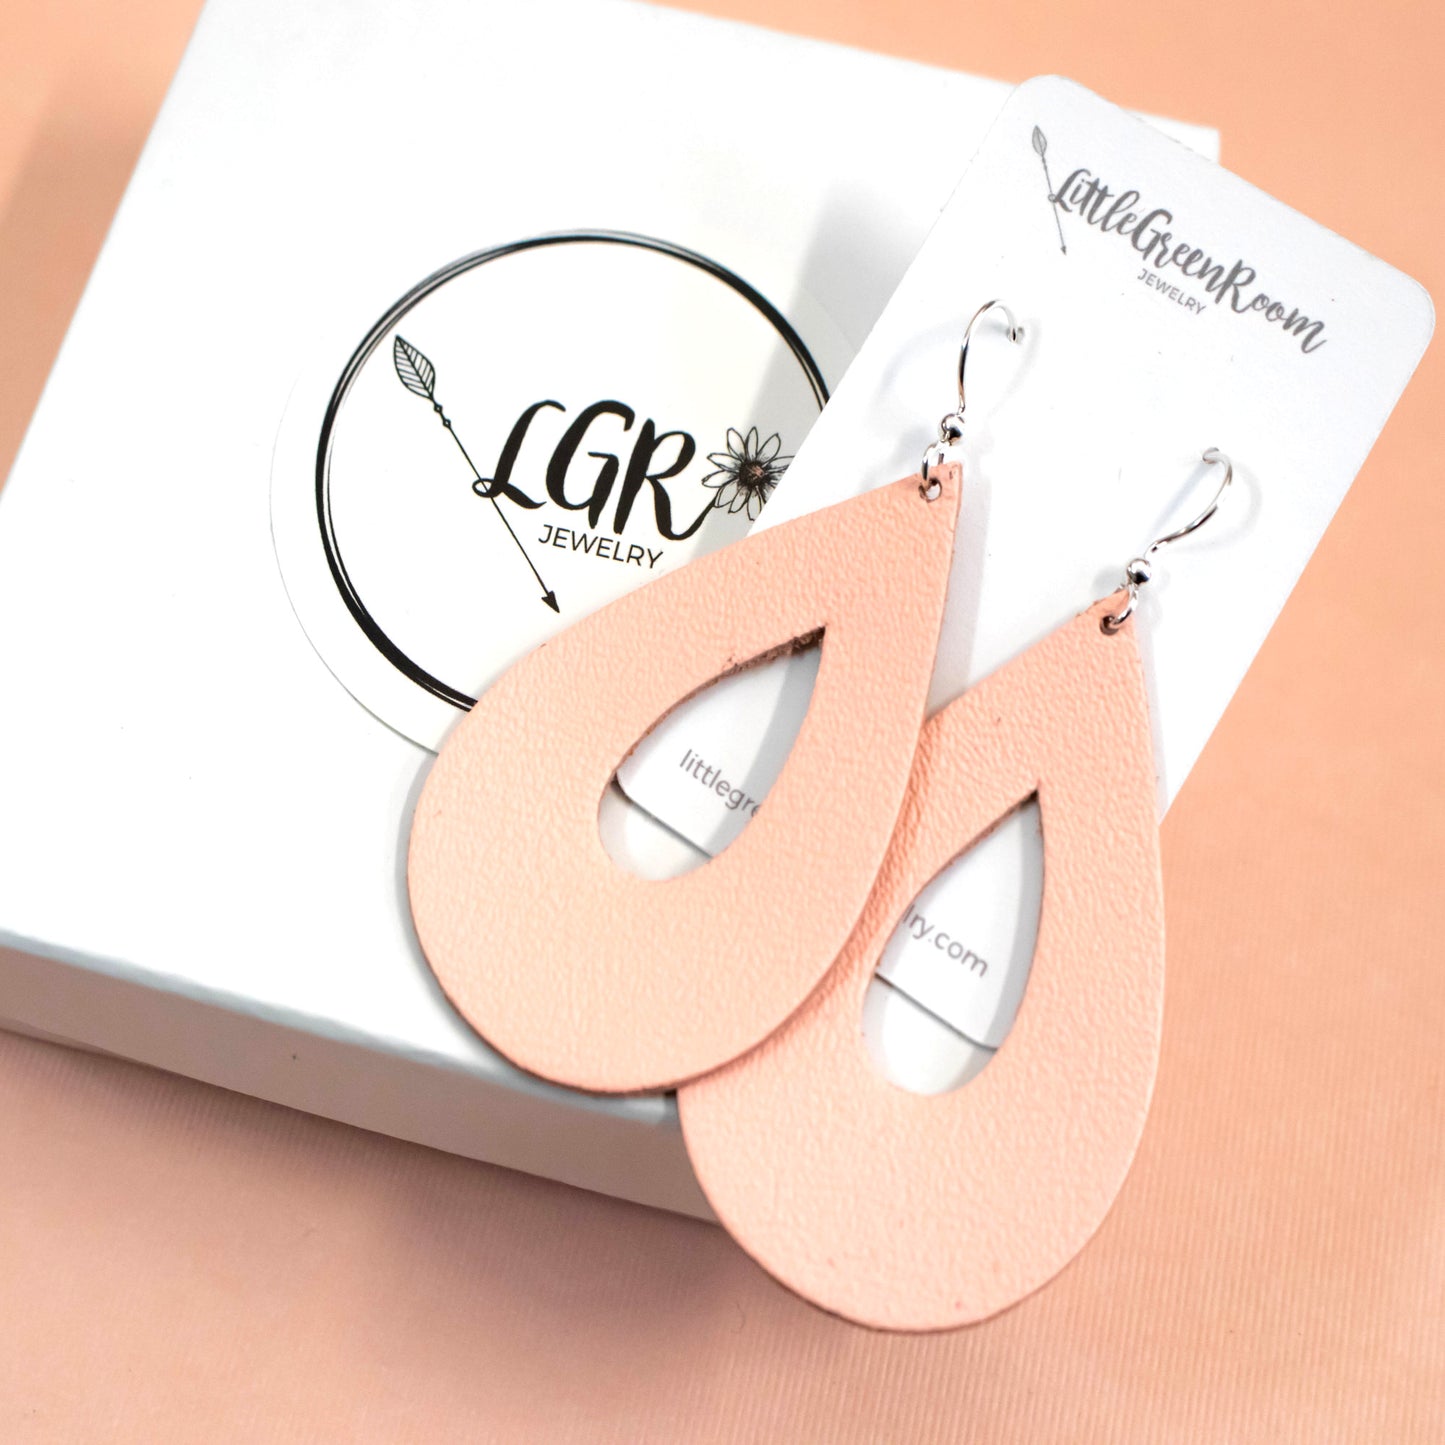 Peach Teardrop Leather Earrings-Womens-LittleGreenRoomJewelry-LittleGreenRoomJewelry